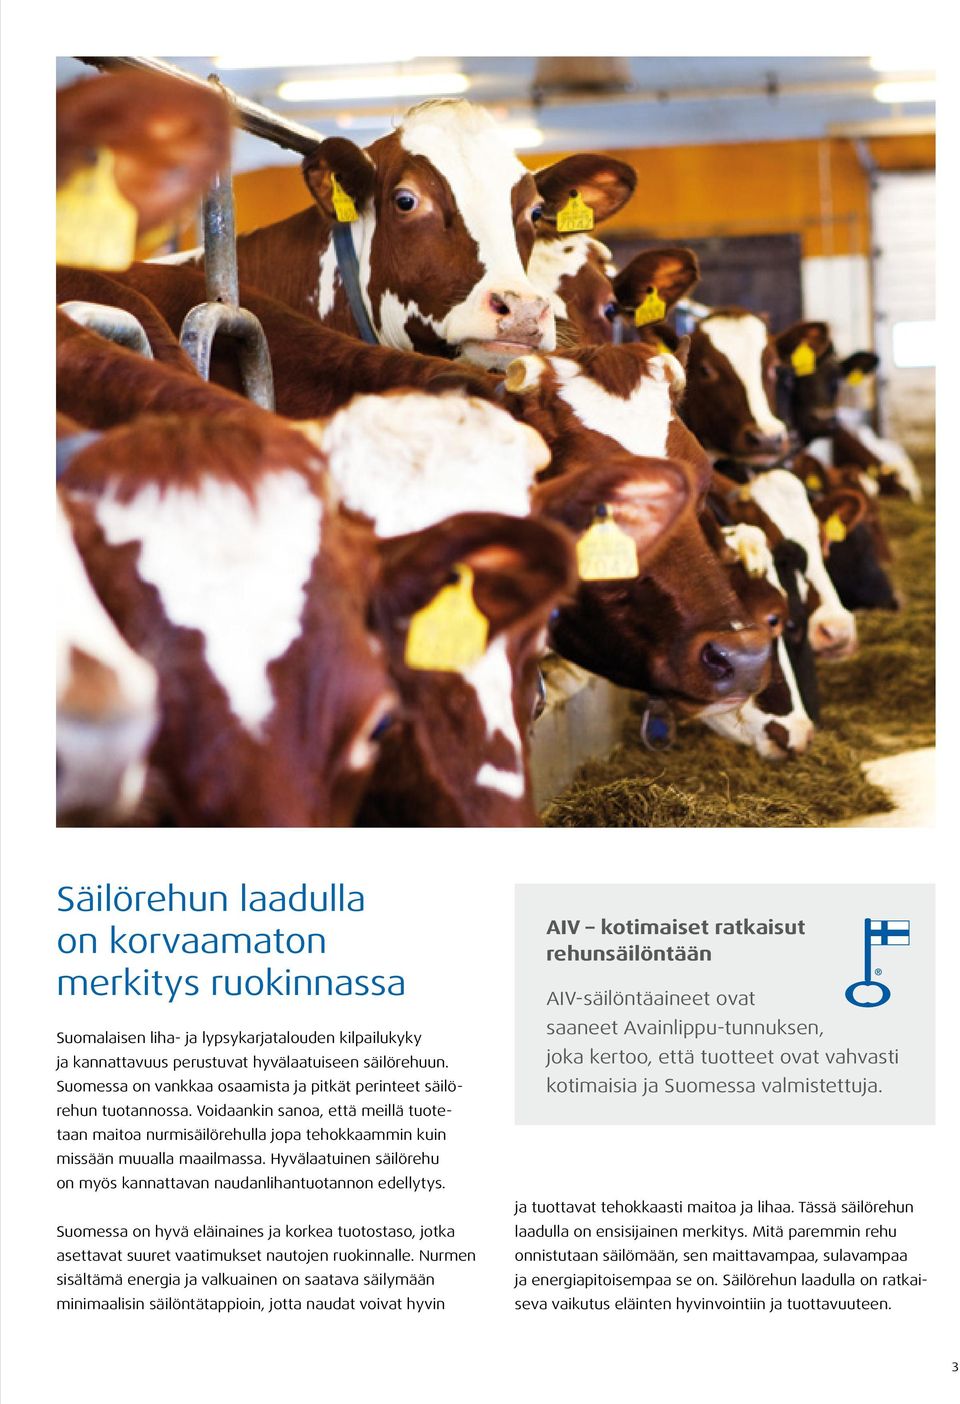 Hyvälaatuinen säilörehu on myös kannattavan naudanlihantuotannon edellytys. Suomessa on hyvä eläinaines ja korkea tuotostaso, jotka asettavat suuret vaatimukset nautojen ruokinnalle.